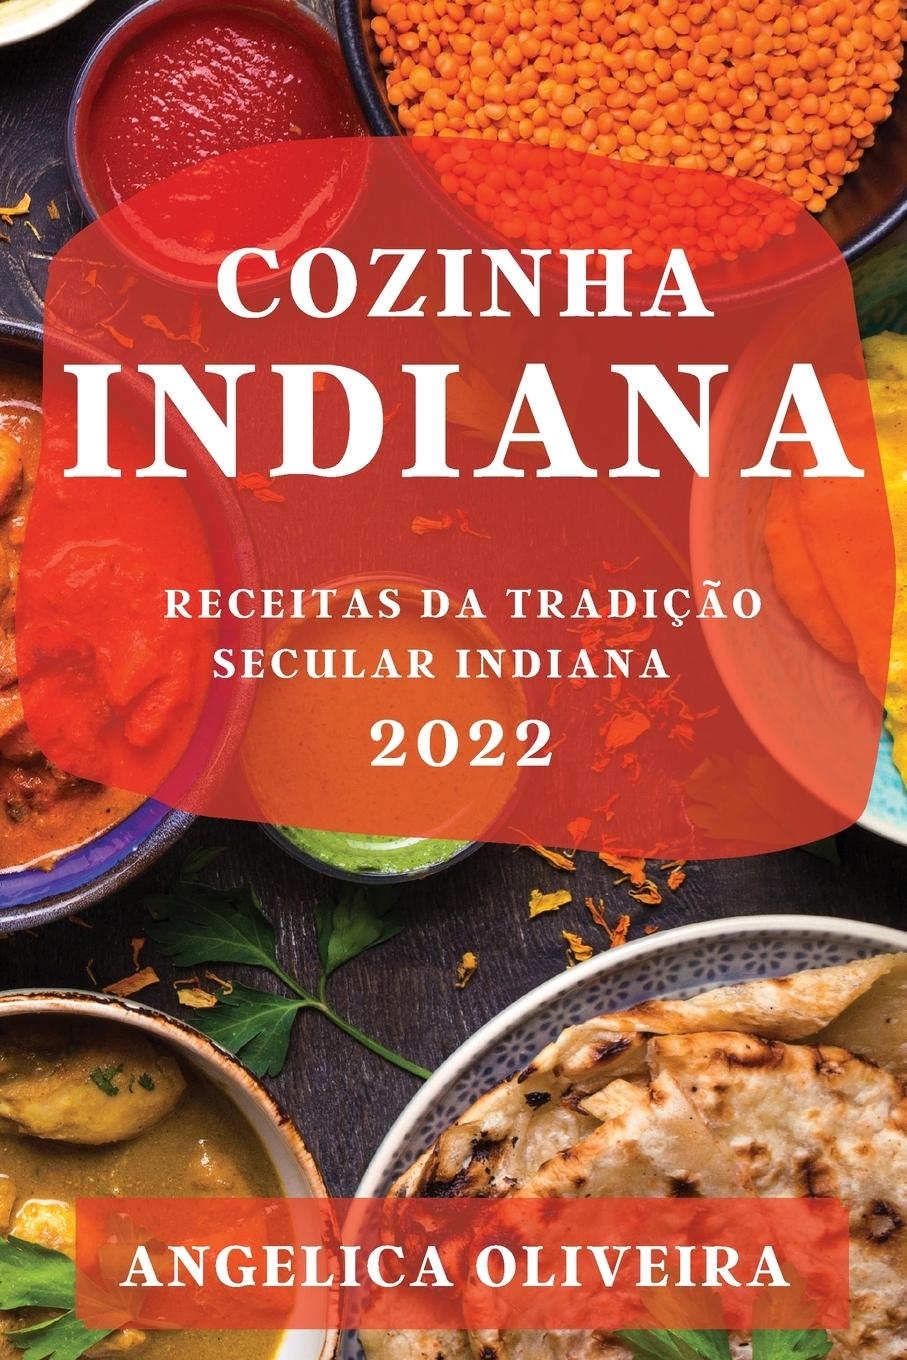 Carte Cozinha Indiana 2022 